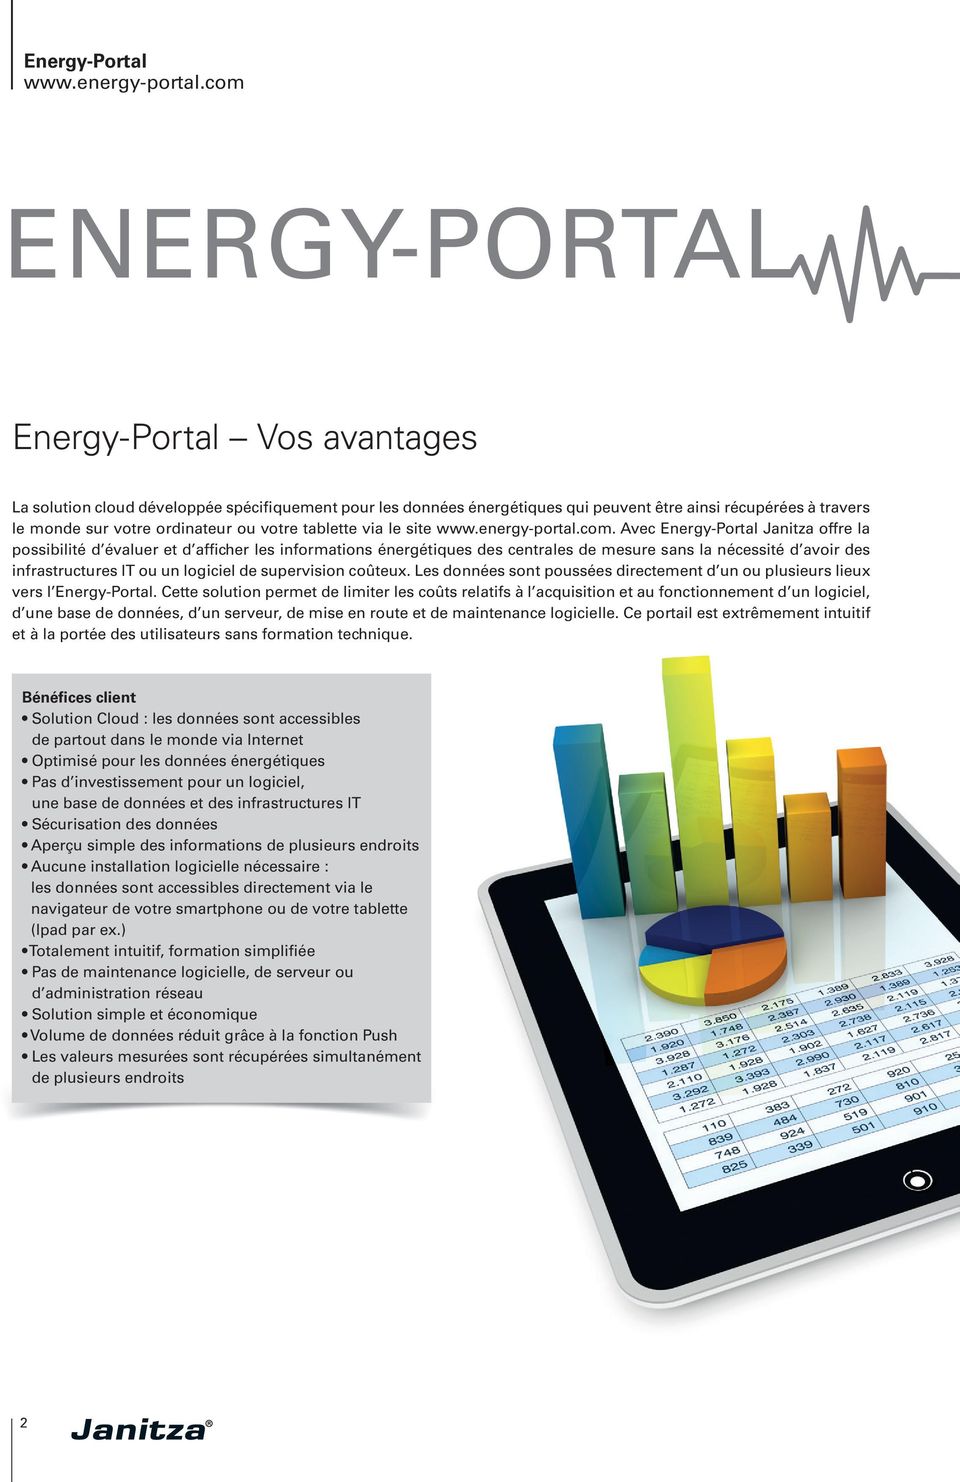 Avec Energy-Portal Janitza offre la possibilité d évaluer et d afficher les informations énergétiques des centrales de mesure sans la nécessité d avoir des infrastructures IT ou un logiciel de